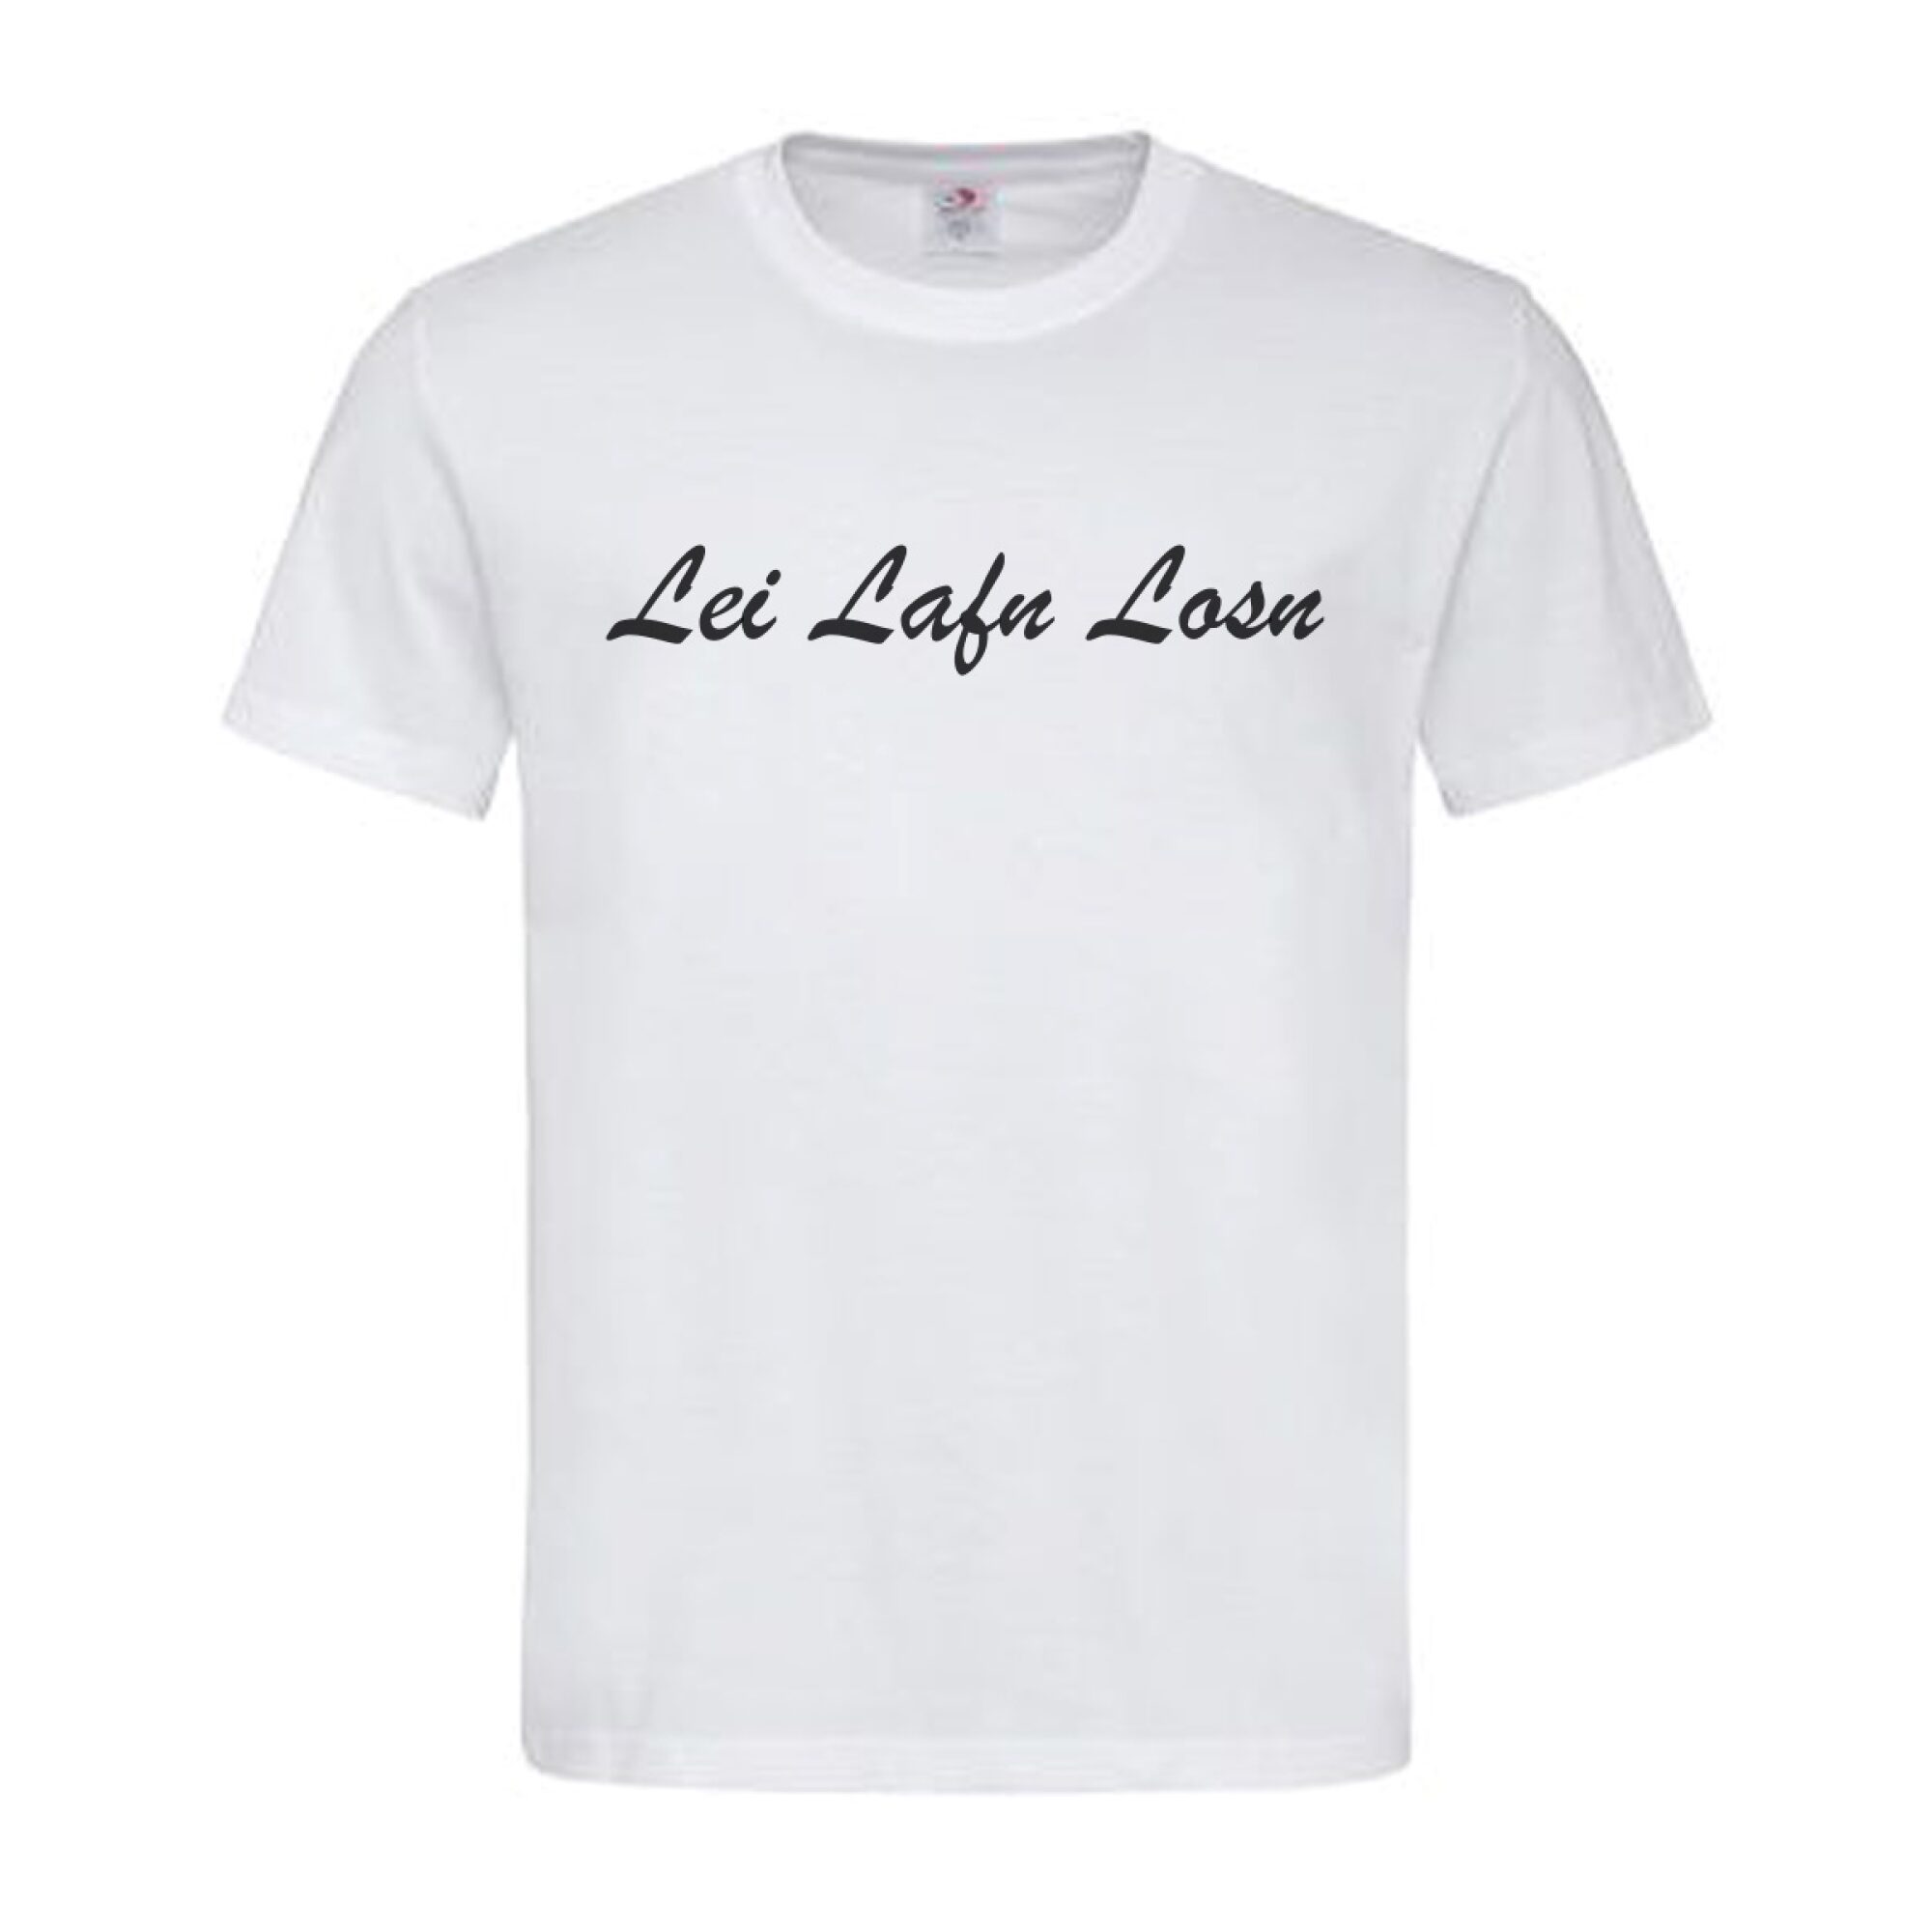 T-Shirt Kärnten Lei Lafn Losn – Nur Laufen Lassen in Mundart, Dialekt